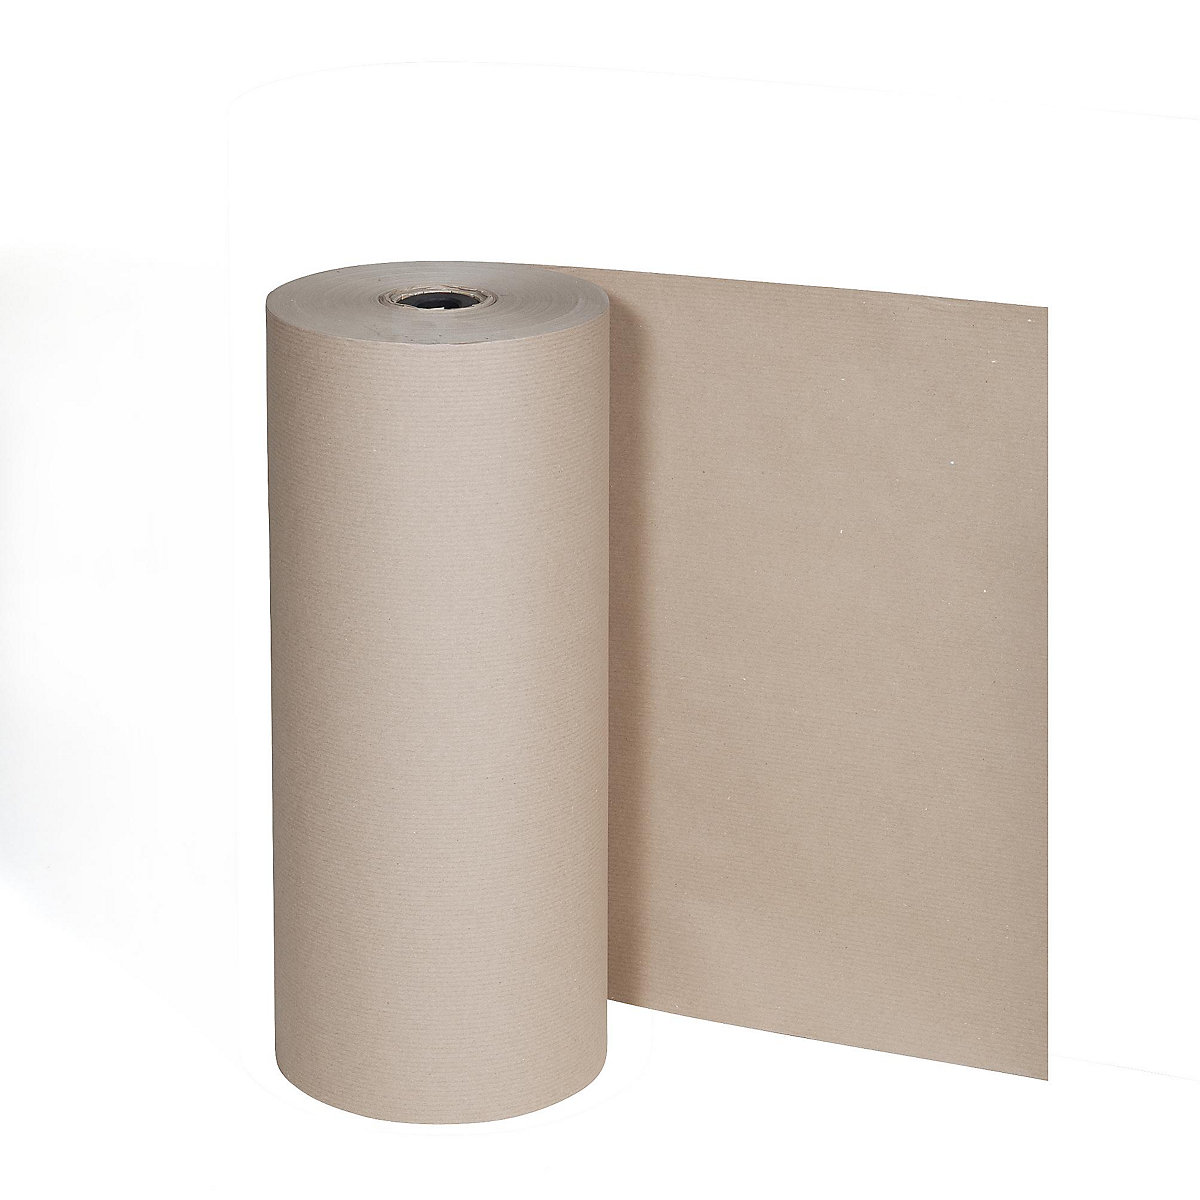 Pakpapier, 80 g/m², grote rol voor verticale standaard, 1250 mm breed-1